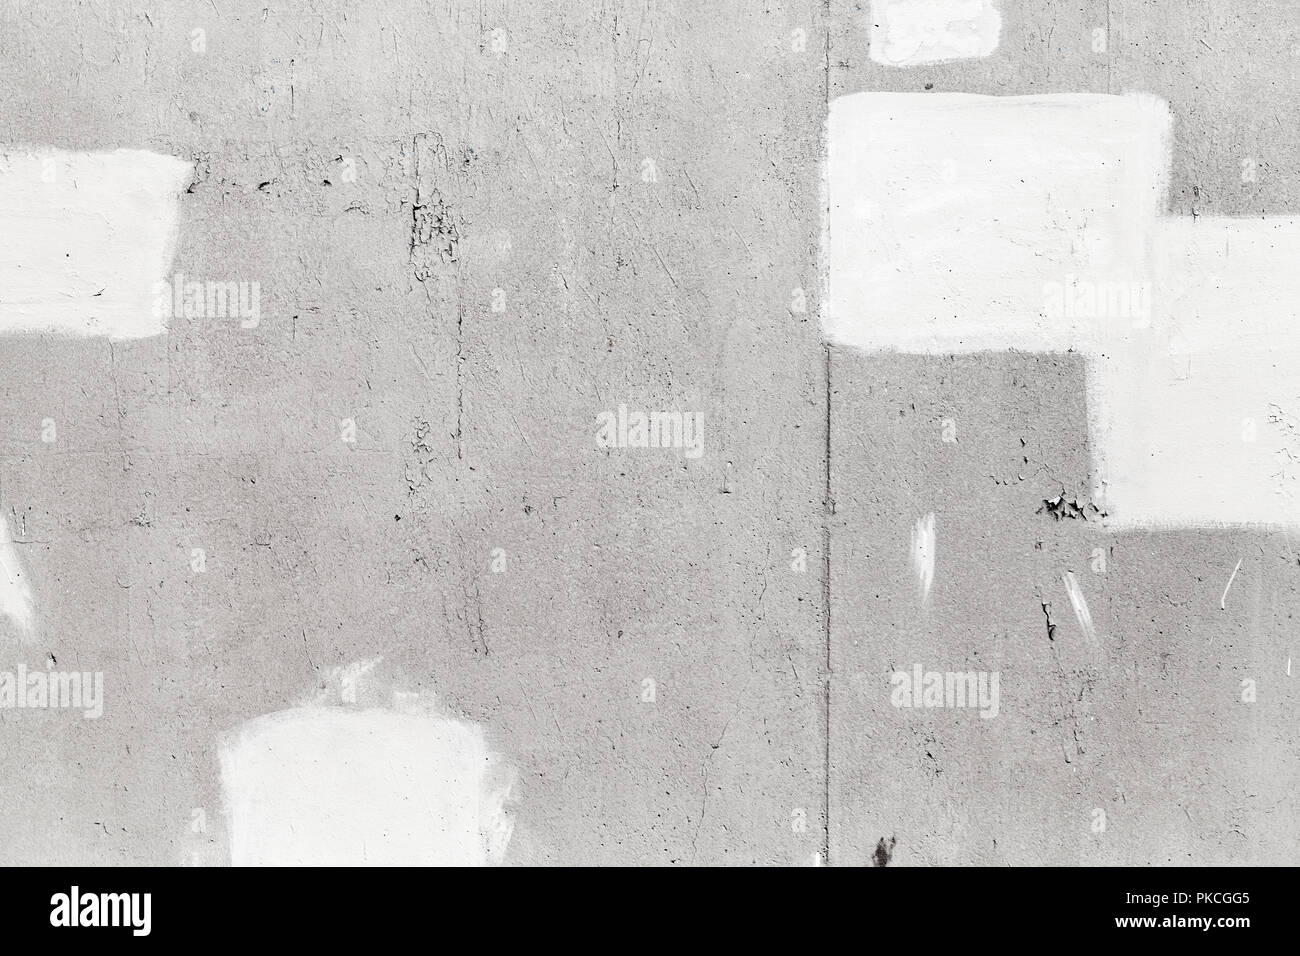 Grigio muro di cemento con vernice bianca i tratti di pennello, close-up texture di sfondo Foto Stock